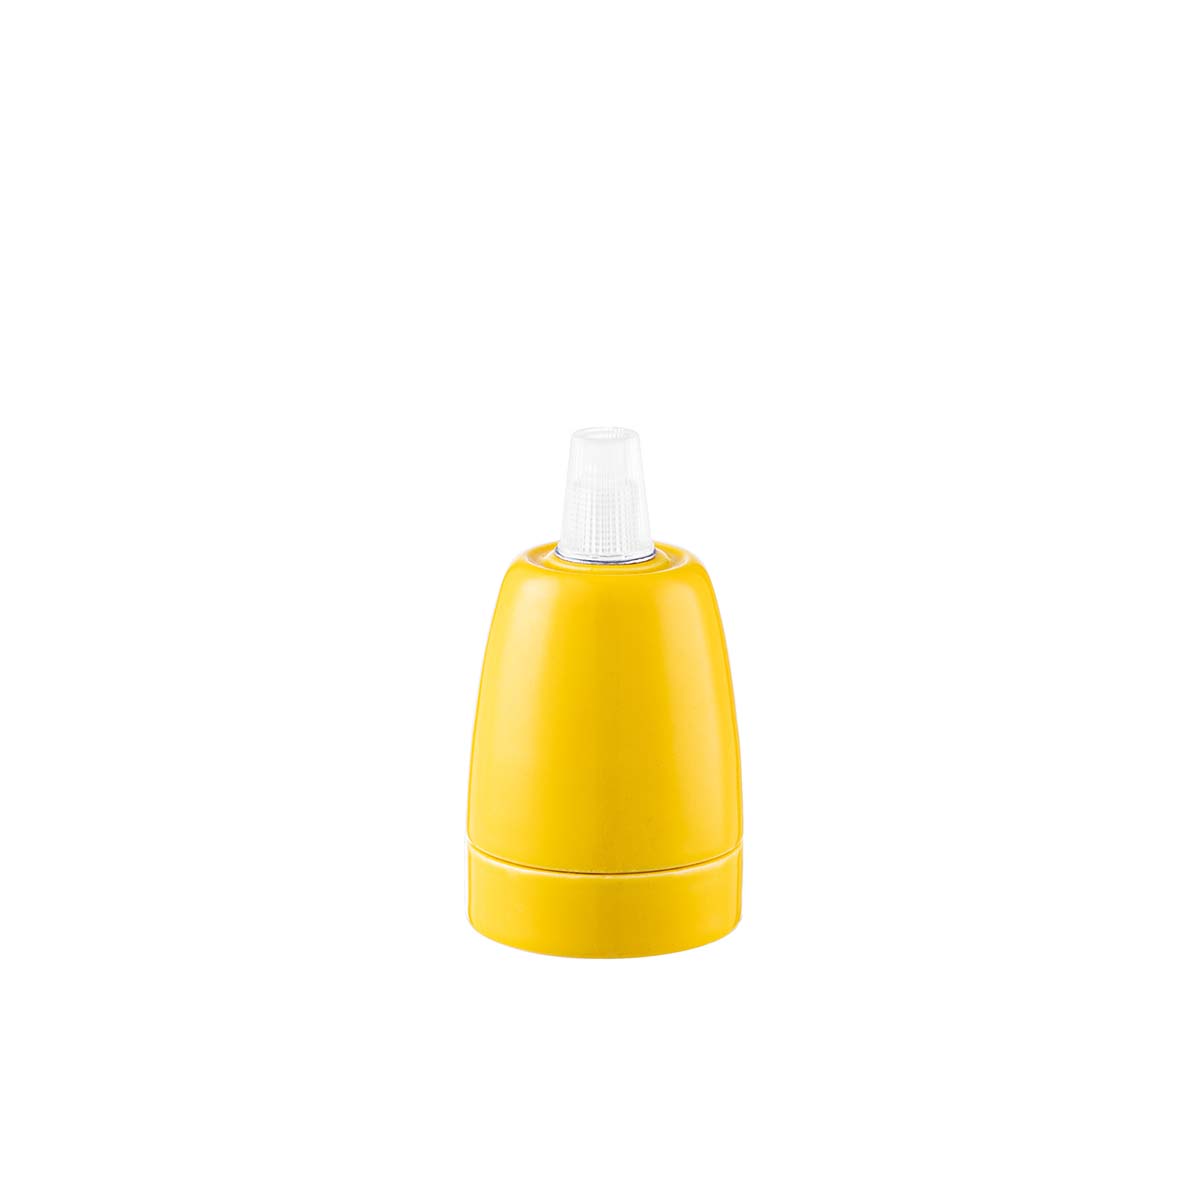 Tangla lighting - TLLH025YE - lamp holder porcelain - E27 - pot - yellow